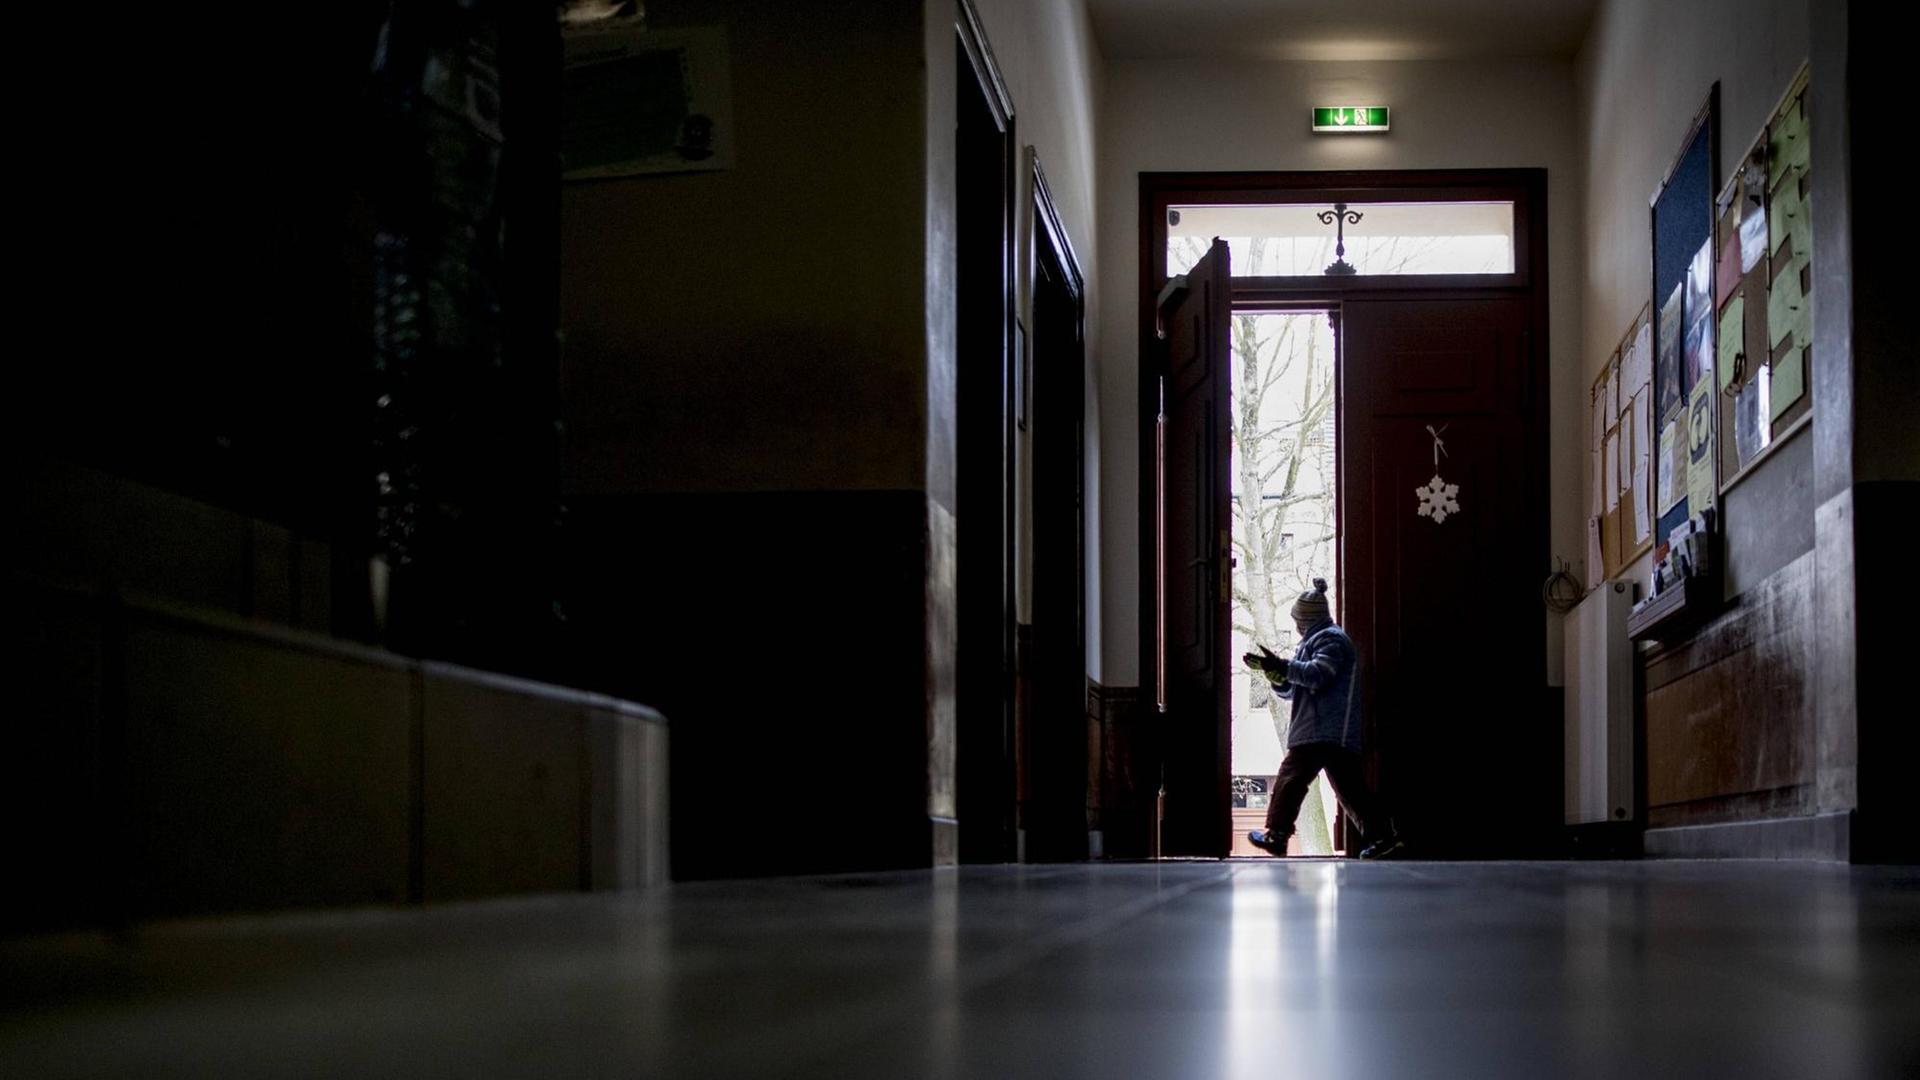 Blick durch den Gang einer Schule. Ein Schüler verlässt das Gebäude durch eine Tür am Ende des Gangs